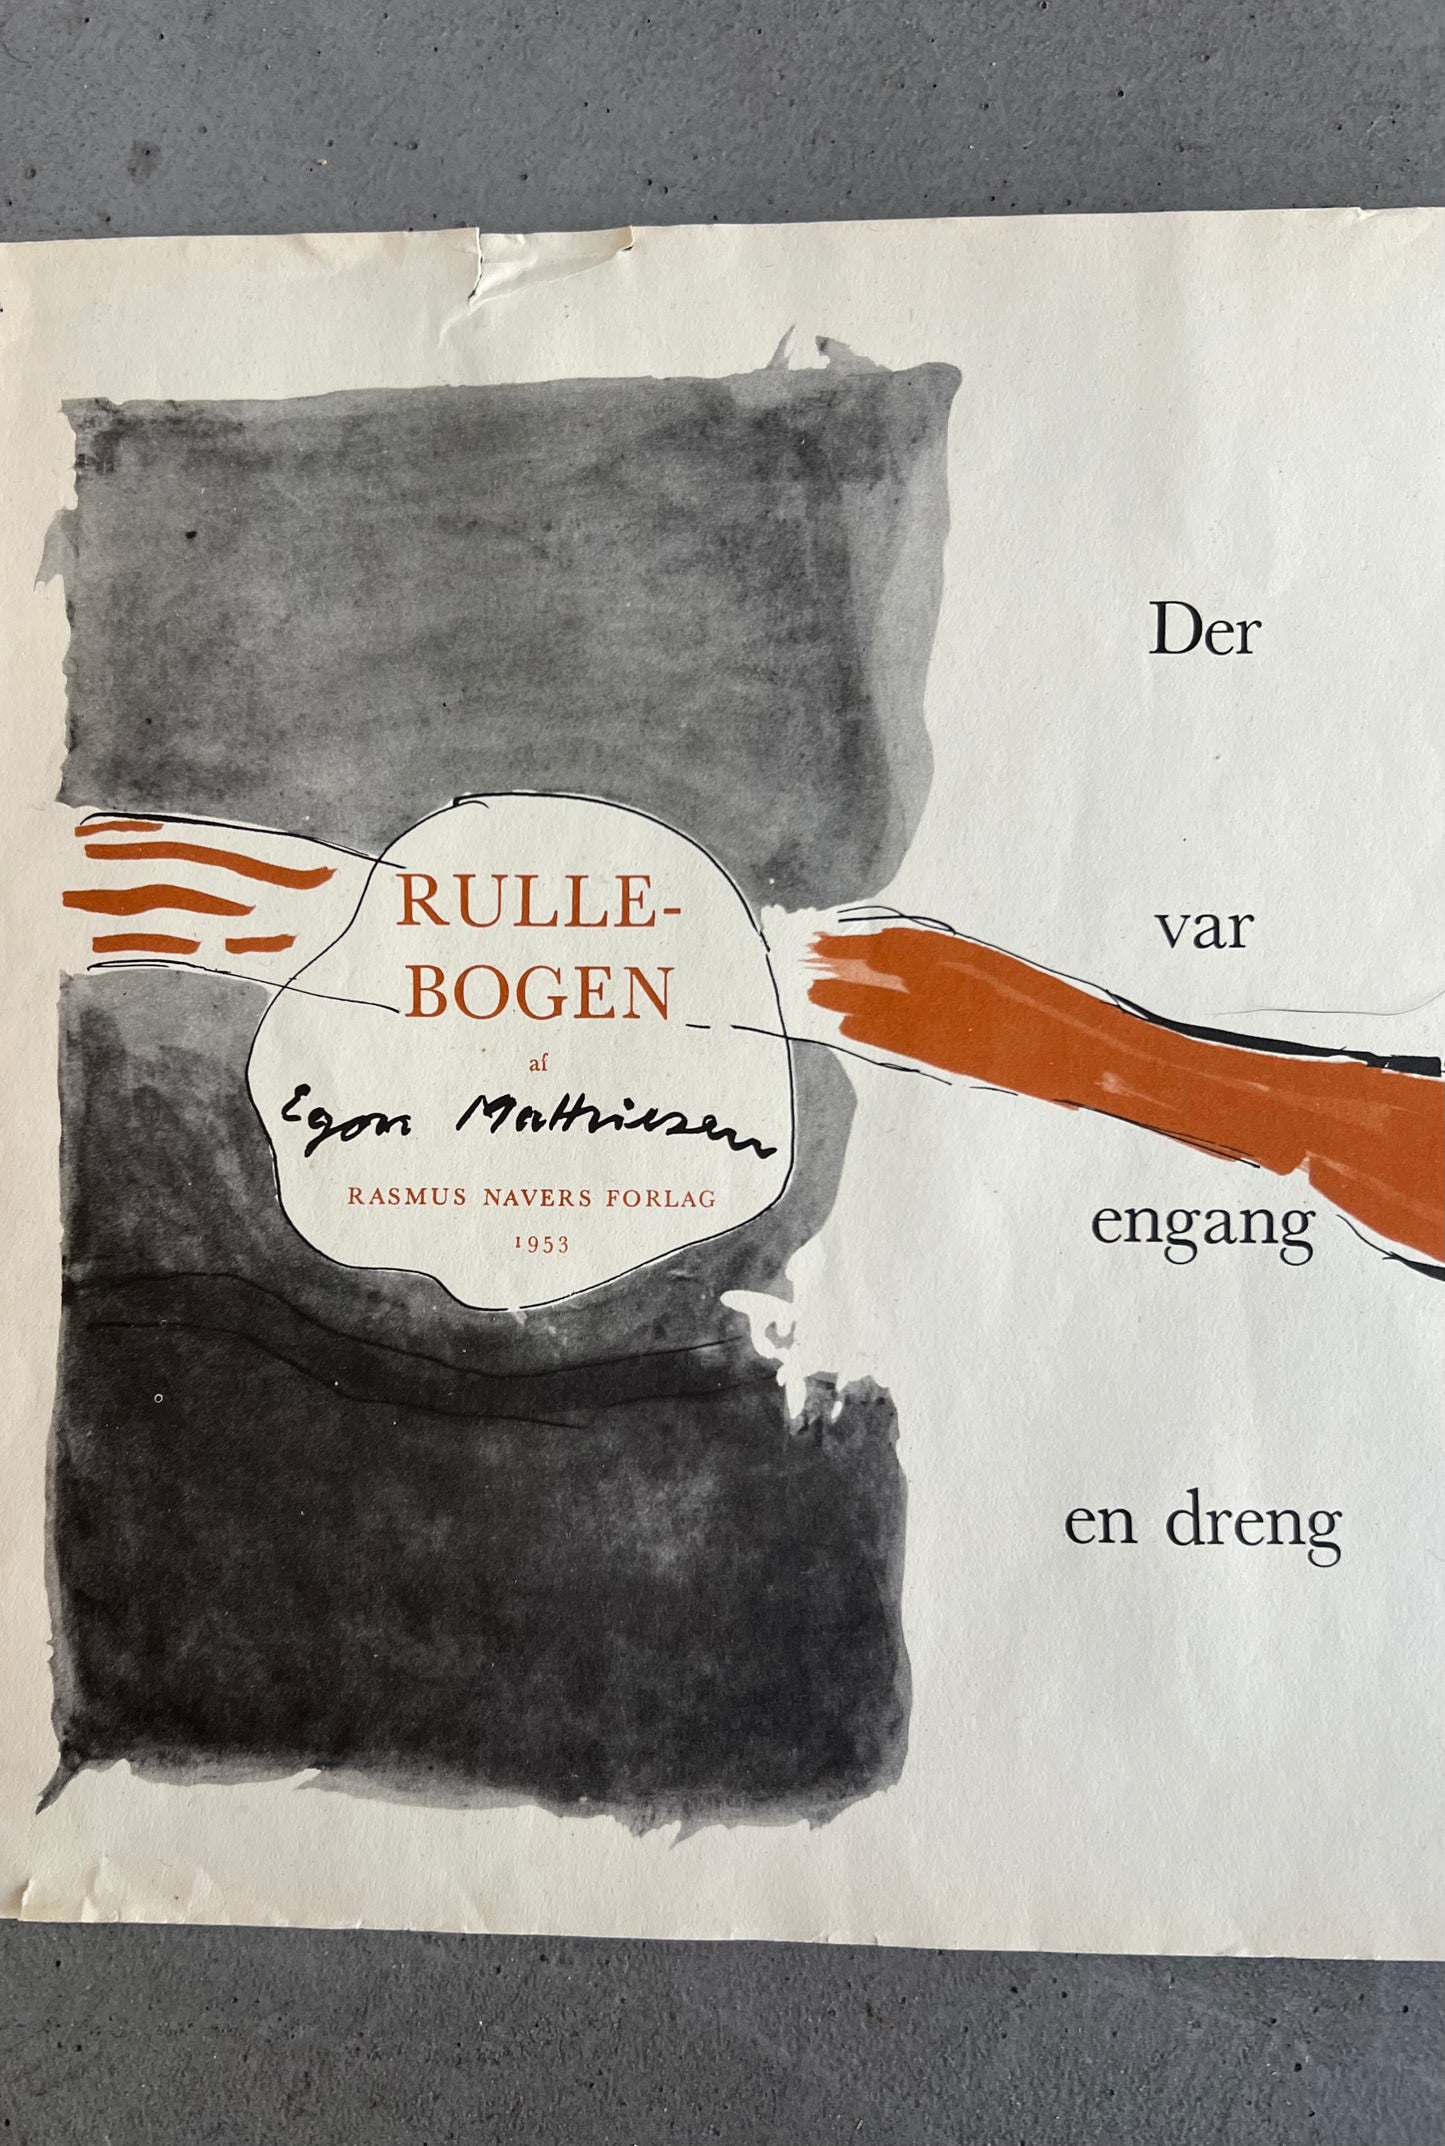 Egon Mathiesen. “Rullebogen”, 1953